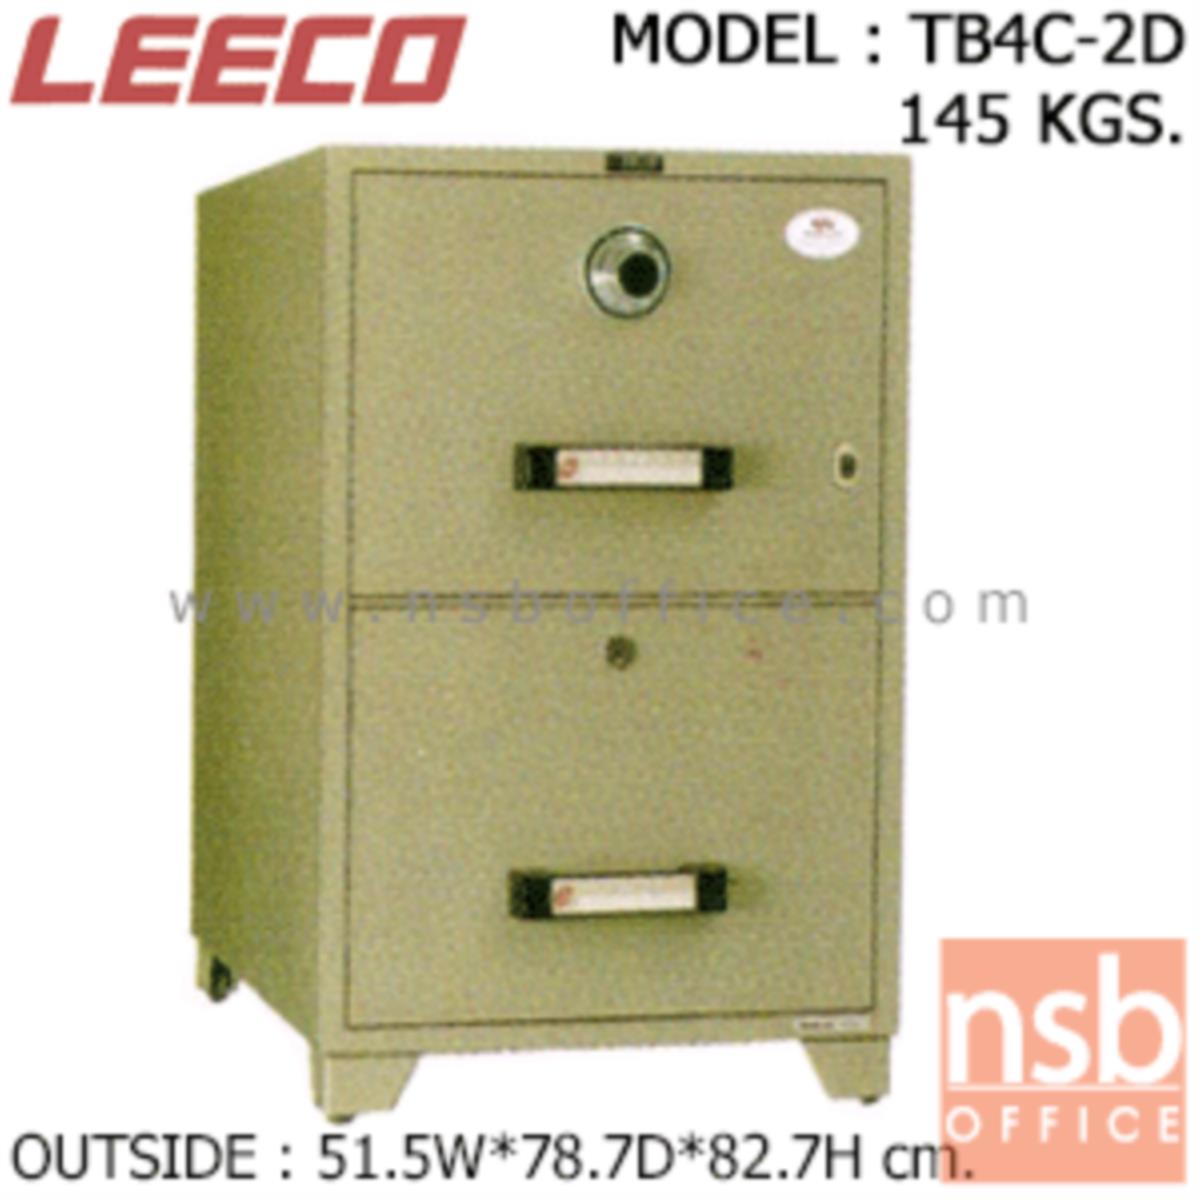 ตู้เซฟ 2 ลิ้นชักแฟ้มแขวน 145 กก. ลีโก้ รุ่น LEECO-TB4C-2D มี 2 กุญแจ 1 รหัส (เปลี่ยนรหัสไม่ได้)   